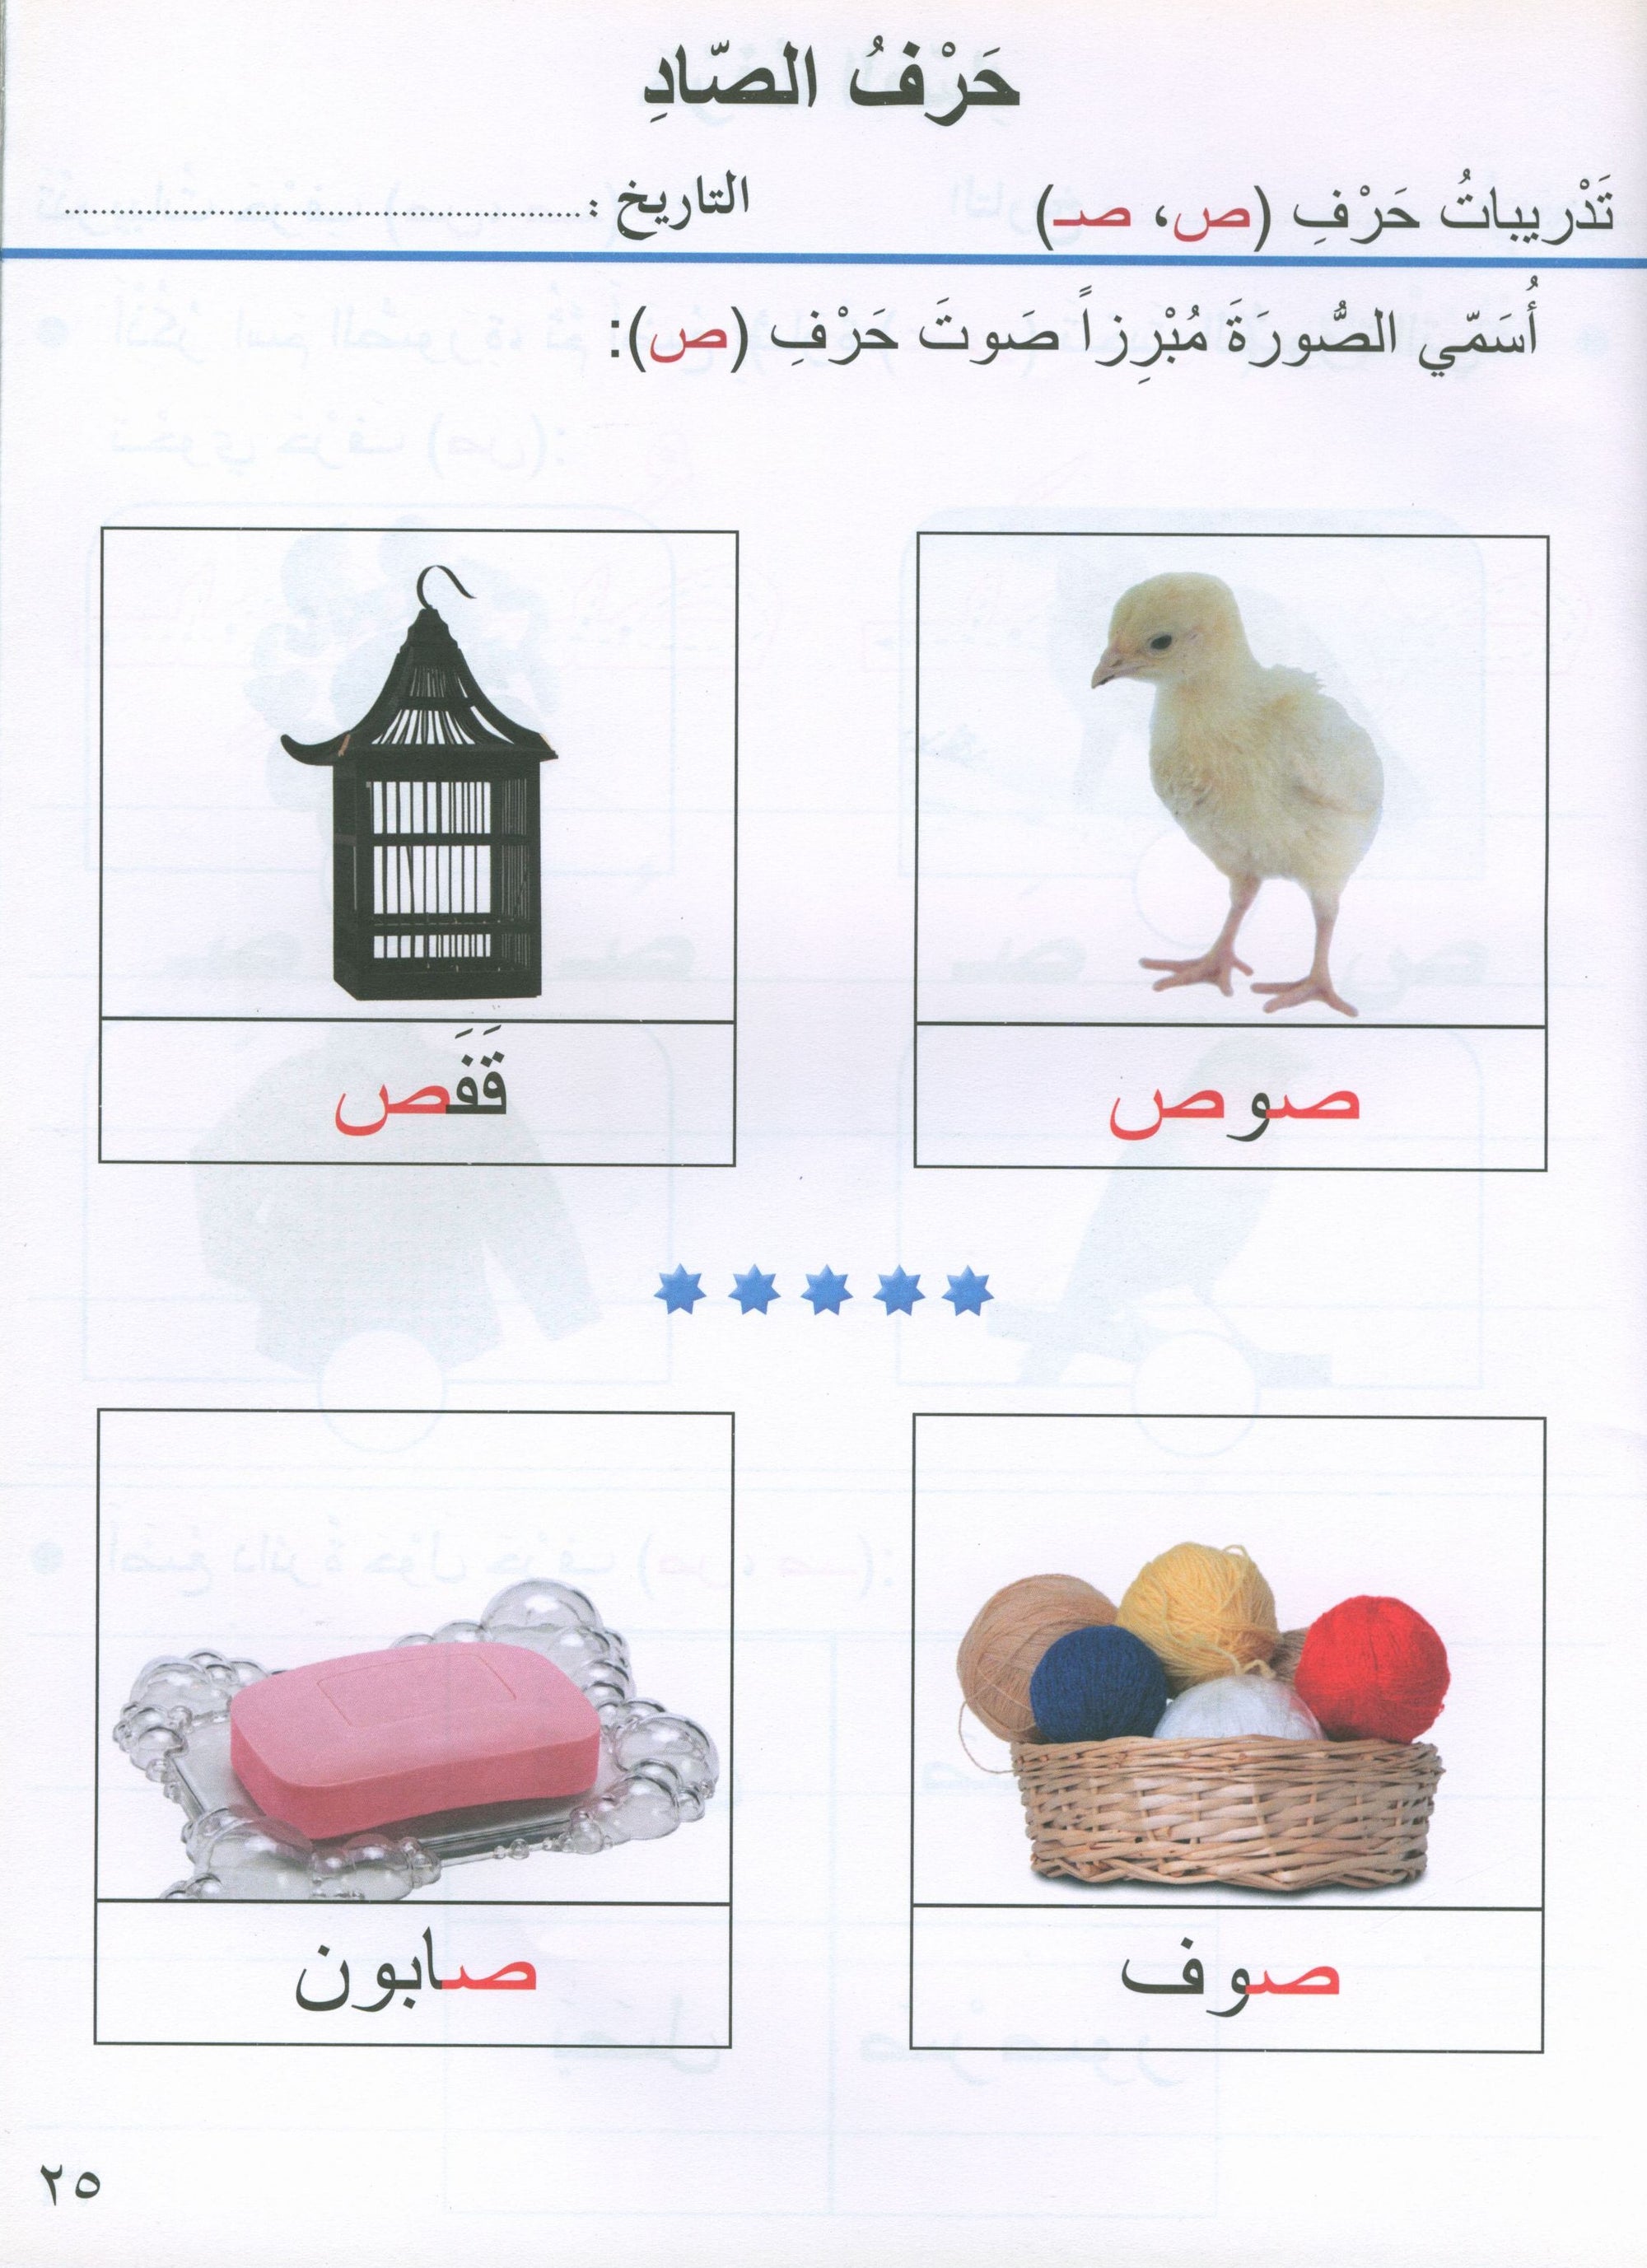 Our Arabic Language Textbook KG 2 لغتنا العربية